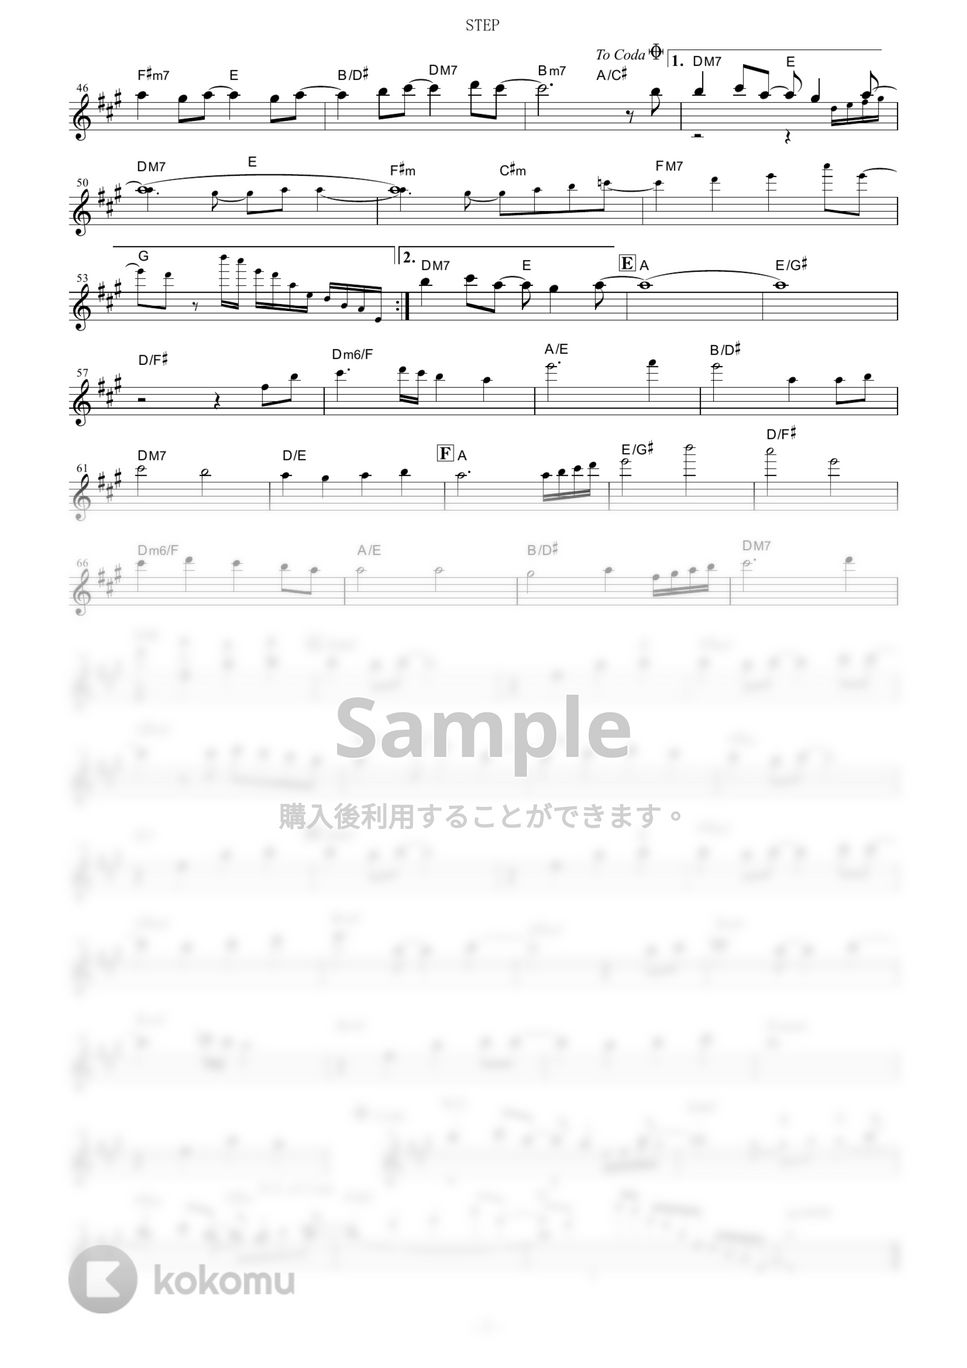 ClariS - STEP (『ニセコイ』 / in Bb) by muta-sax